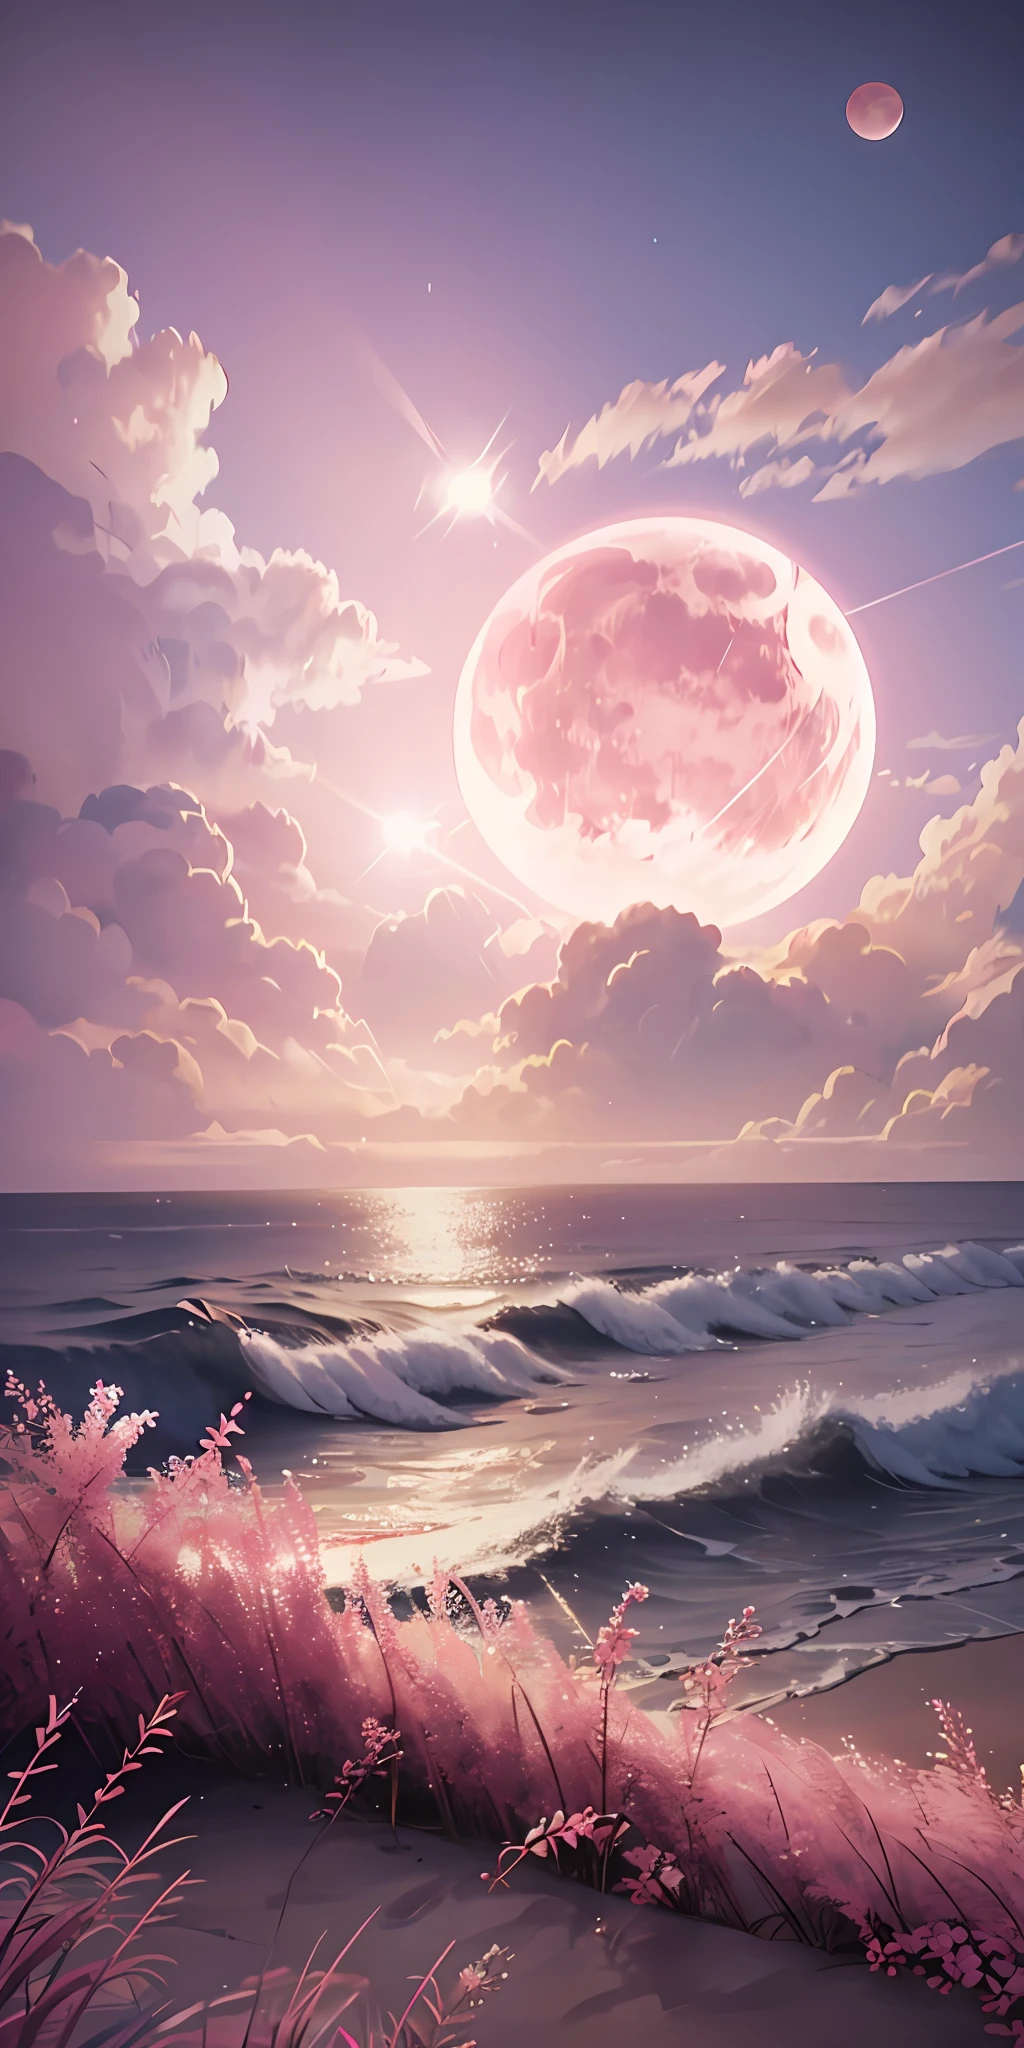 القمر الوردي, السماء الوردية, الغيوم الوردية الباستيل, pink waves متألق, متألق, الورود الوردية على المحيط الوردي, خيالي, إضاءة ناعمة, الترا اتش دي, الواقعية, تأثيرات سينمائية, عدسة مضيئة, الفتحة 16